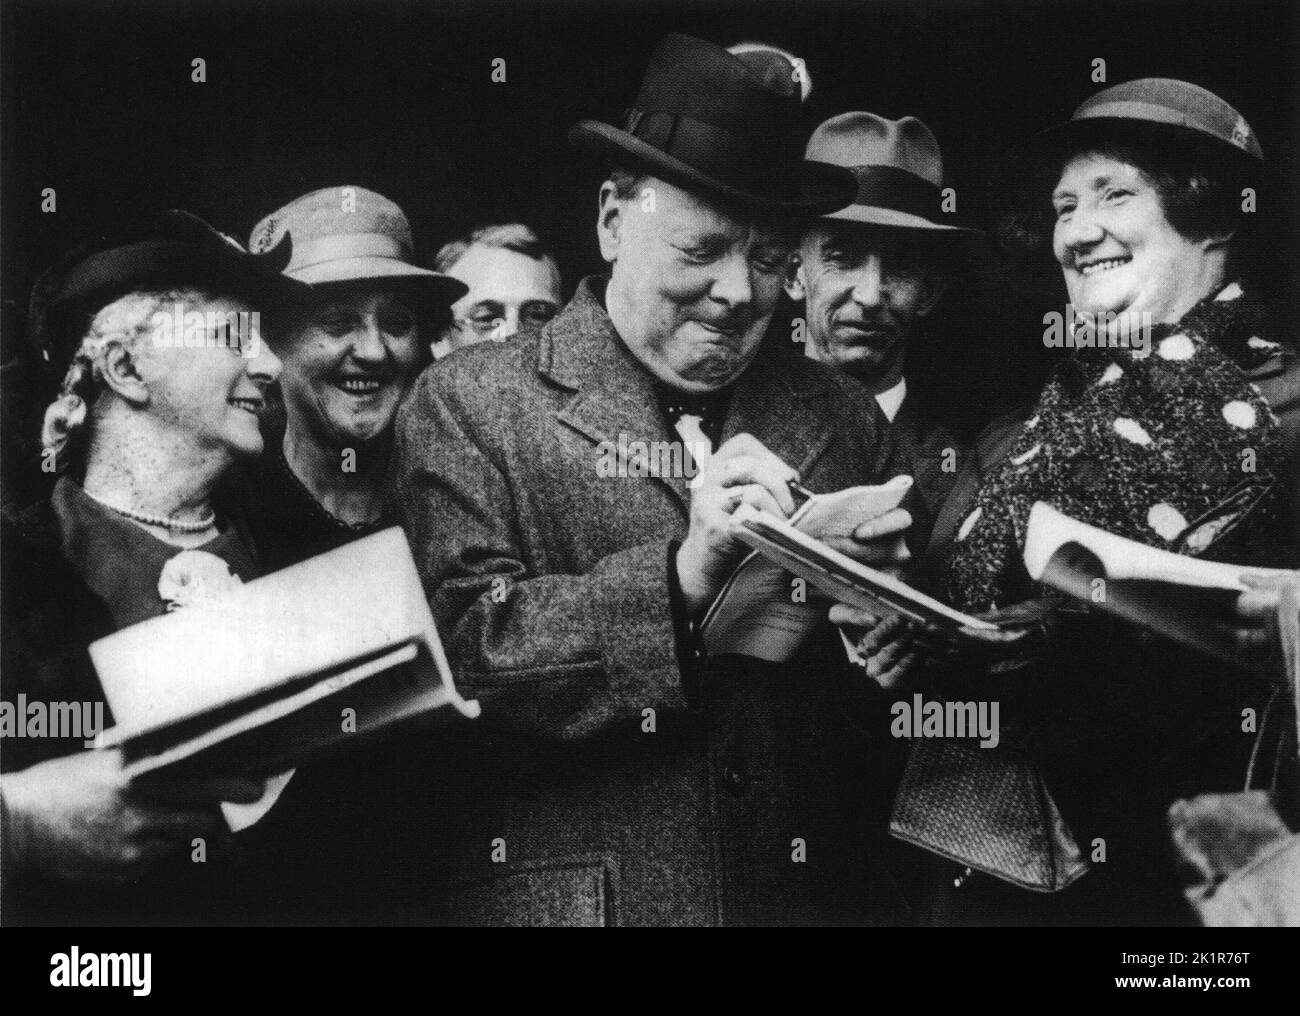 Winston Churchill signe des autographes à la Conférence du Parti conservateur. Octobre 1937 Banque D'Images